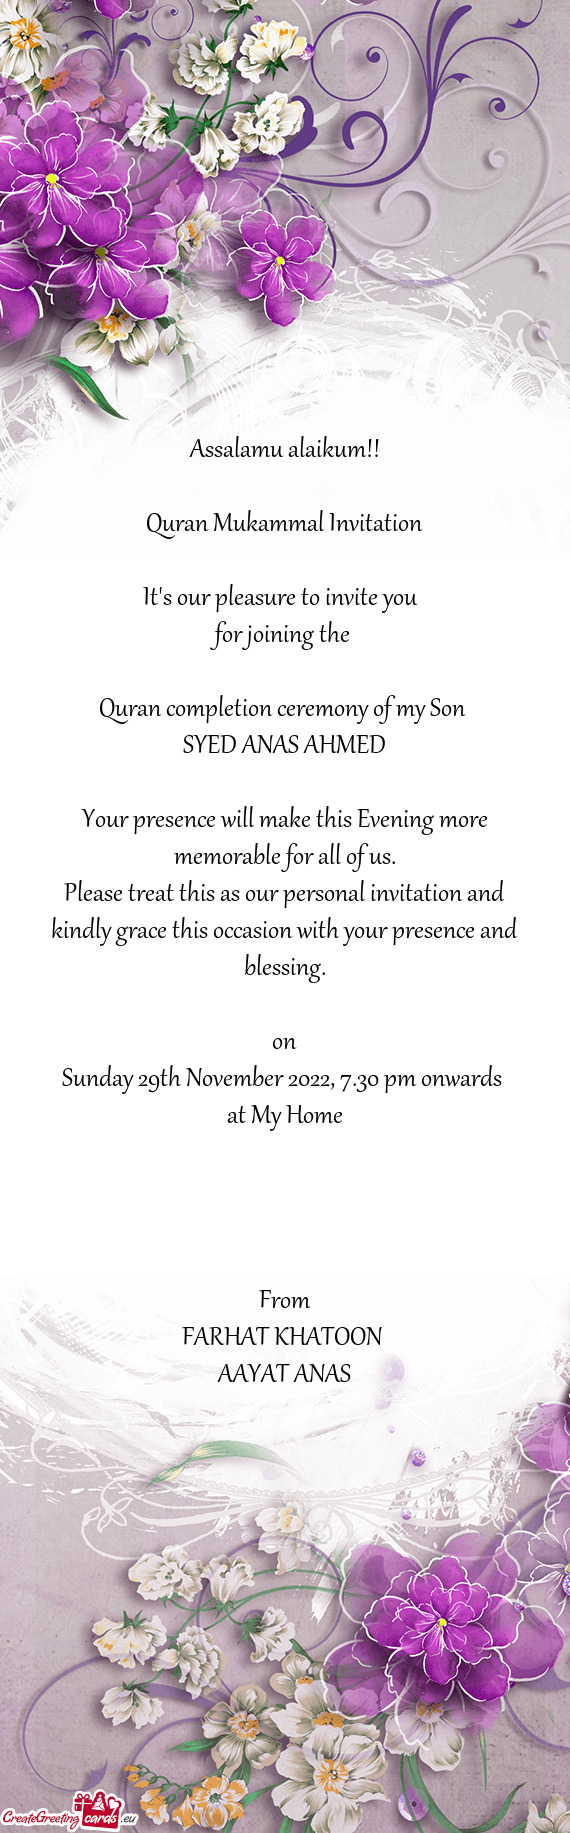 Quran Mukammal Invitation